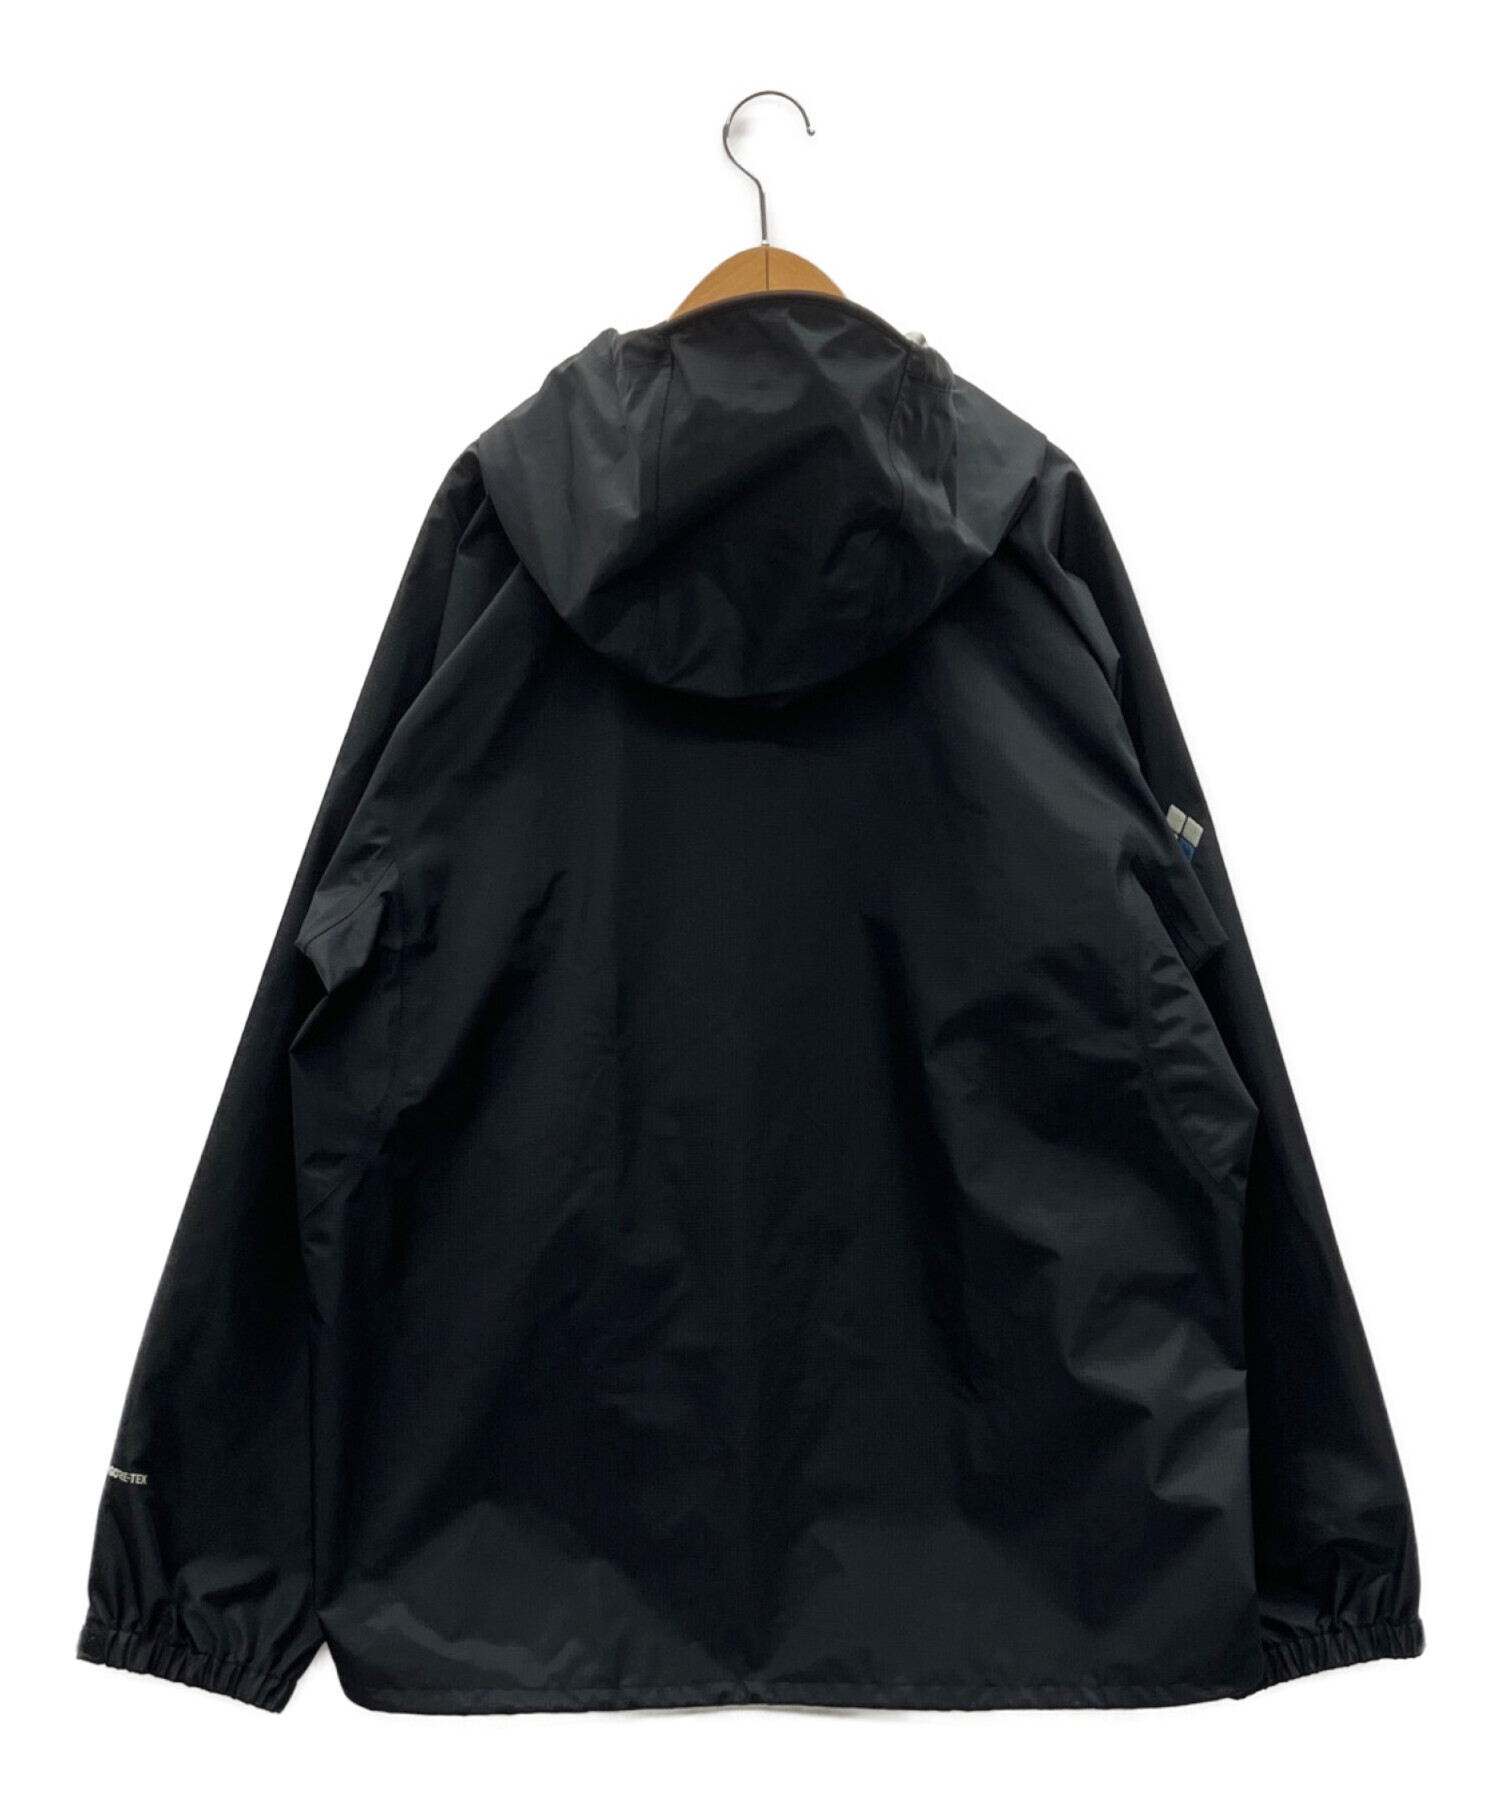 mont-bell (モンベル) レインダンサー ゴアテックス ジャケット ブラック サイズ:L